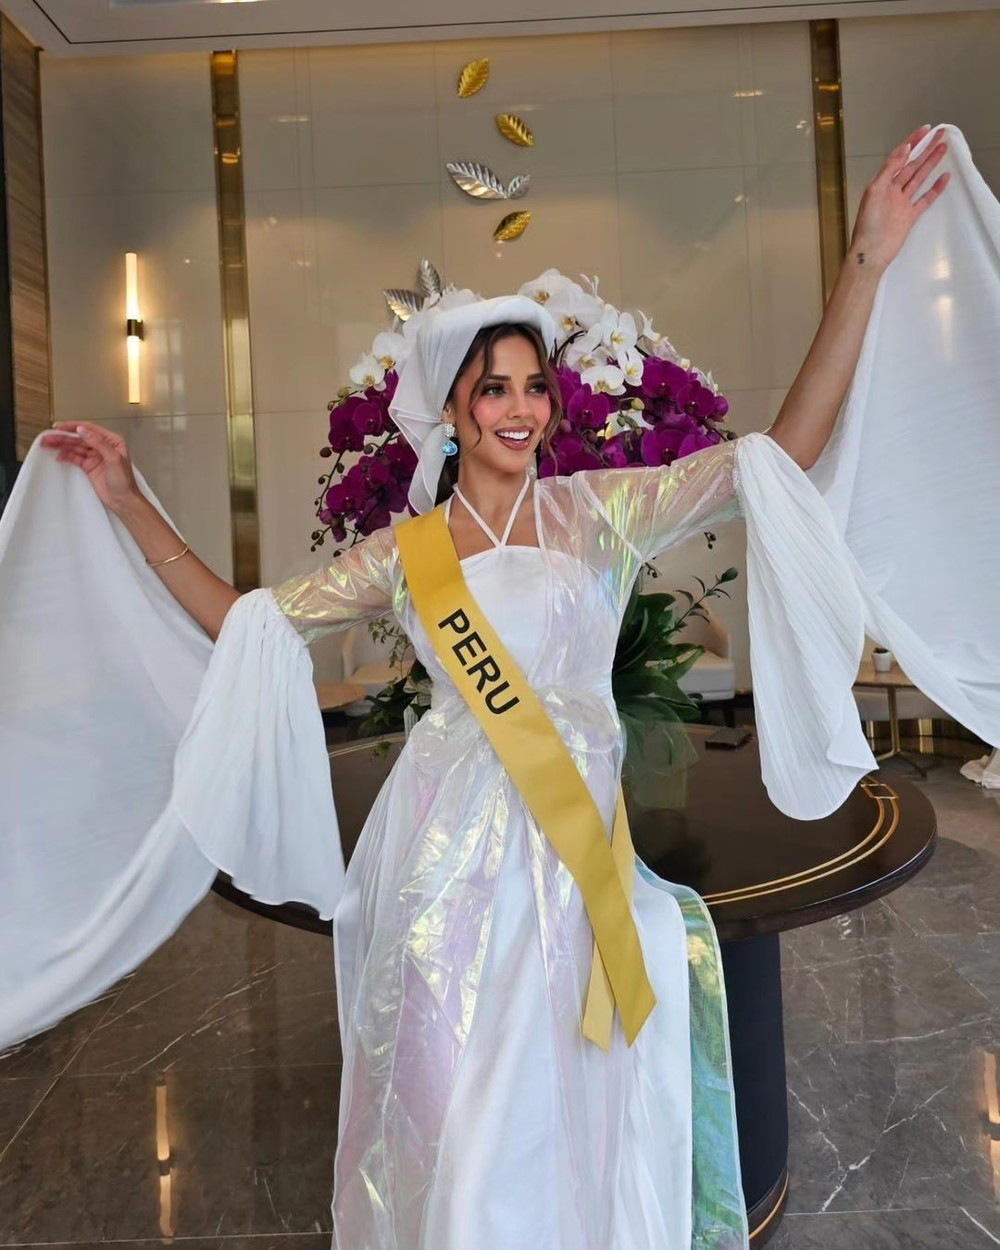 Nhan sắc người đẹp có 4,6 triệu lượt theo dõi đăng quang hoa hậu ở Việt Nam - Ảnh 12.